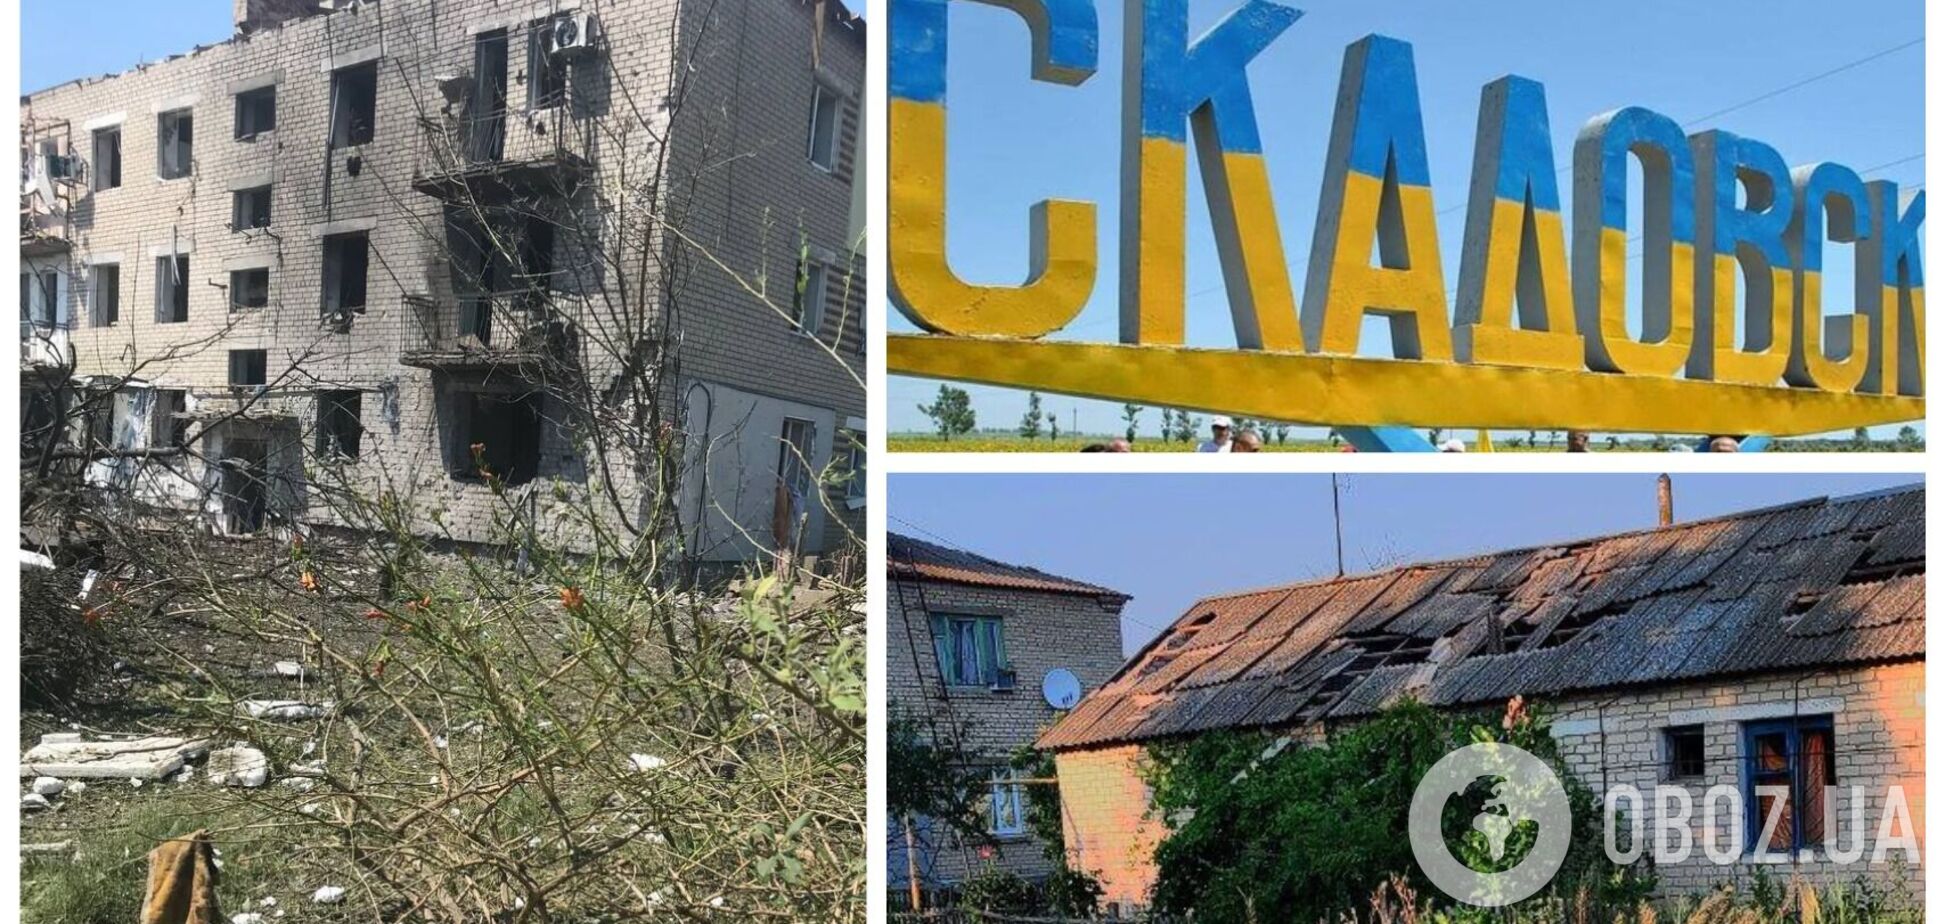 'Ракеты летели со стороны моря': войска РФ ударили по дому в оккупированном Скадовске, есть погибшие